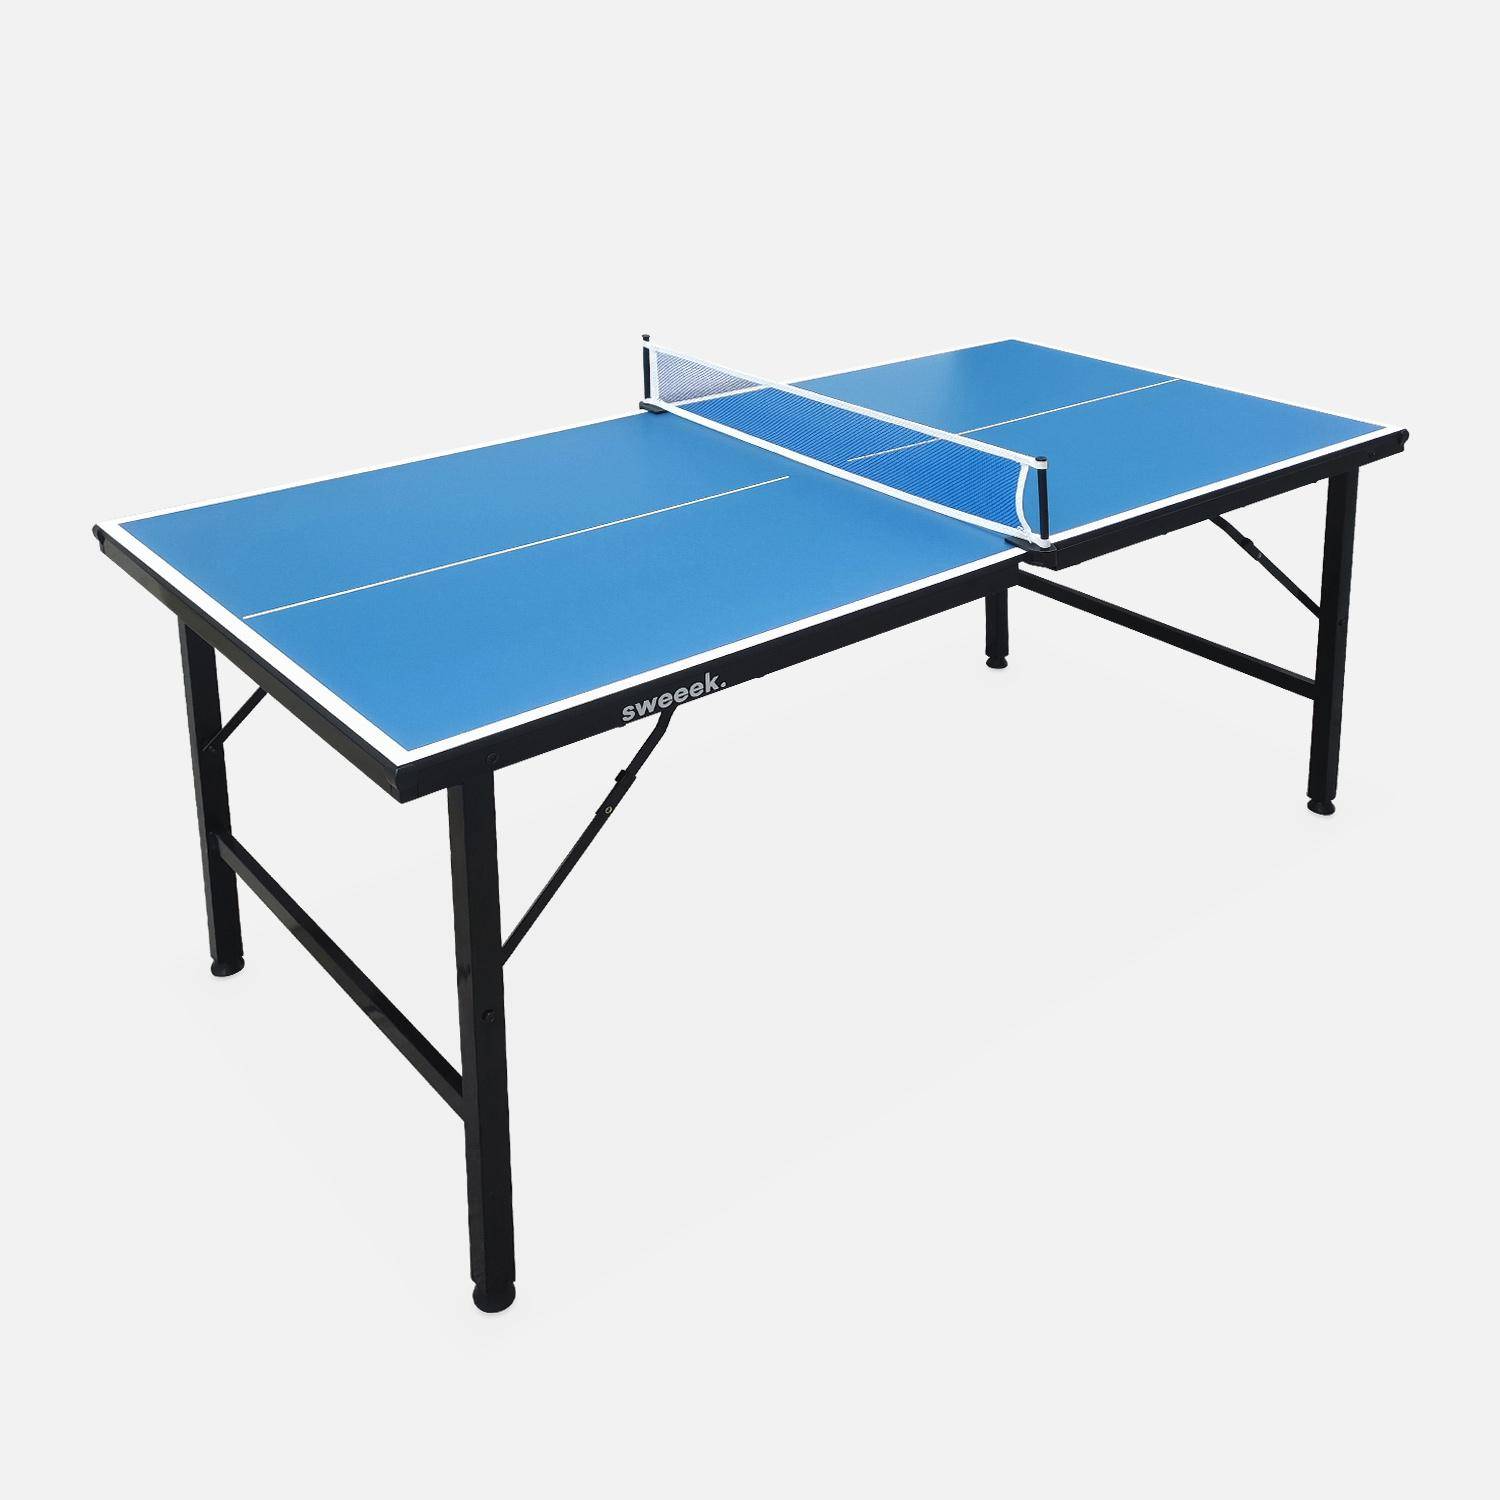 Mini Mesa de Ping Pong de interior, Azul, 150x75,sweeek,Photo1